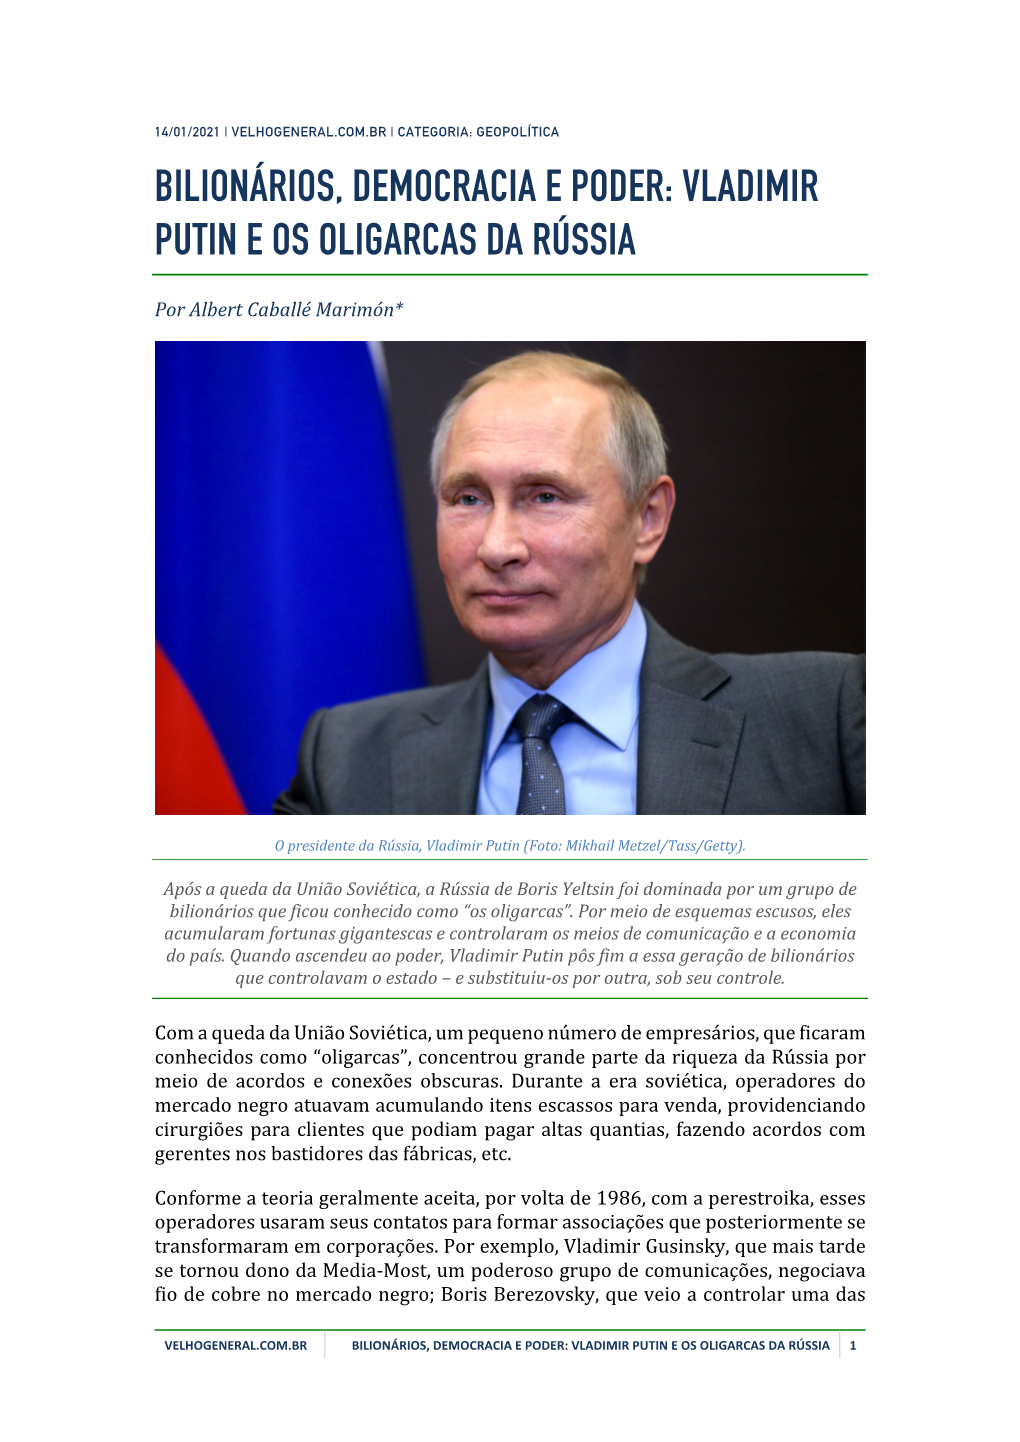 Bilionários, Democracia E Poder: Vladimir Putin E Os Oligarcas Da Rússia